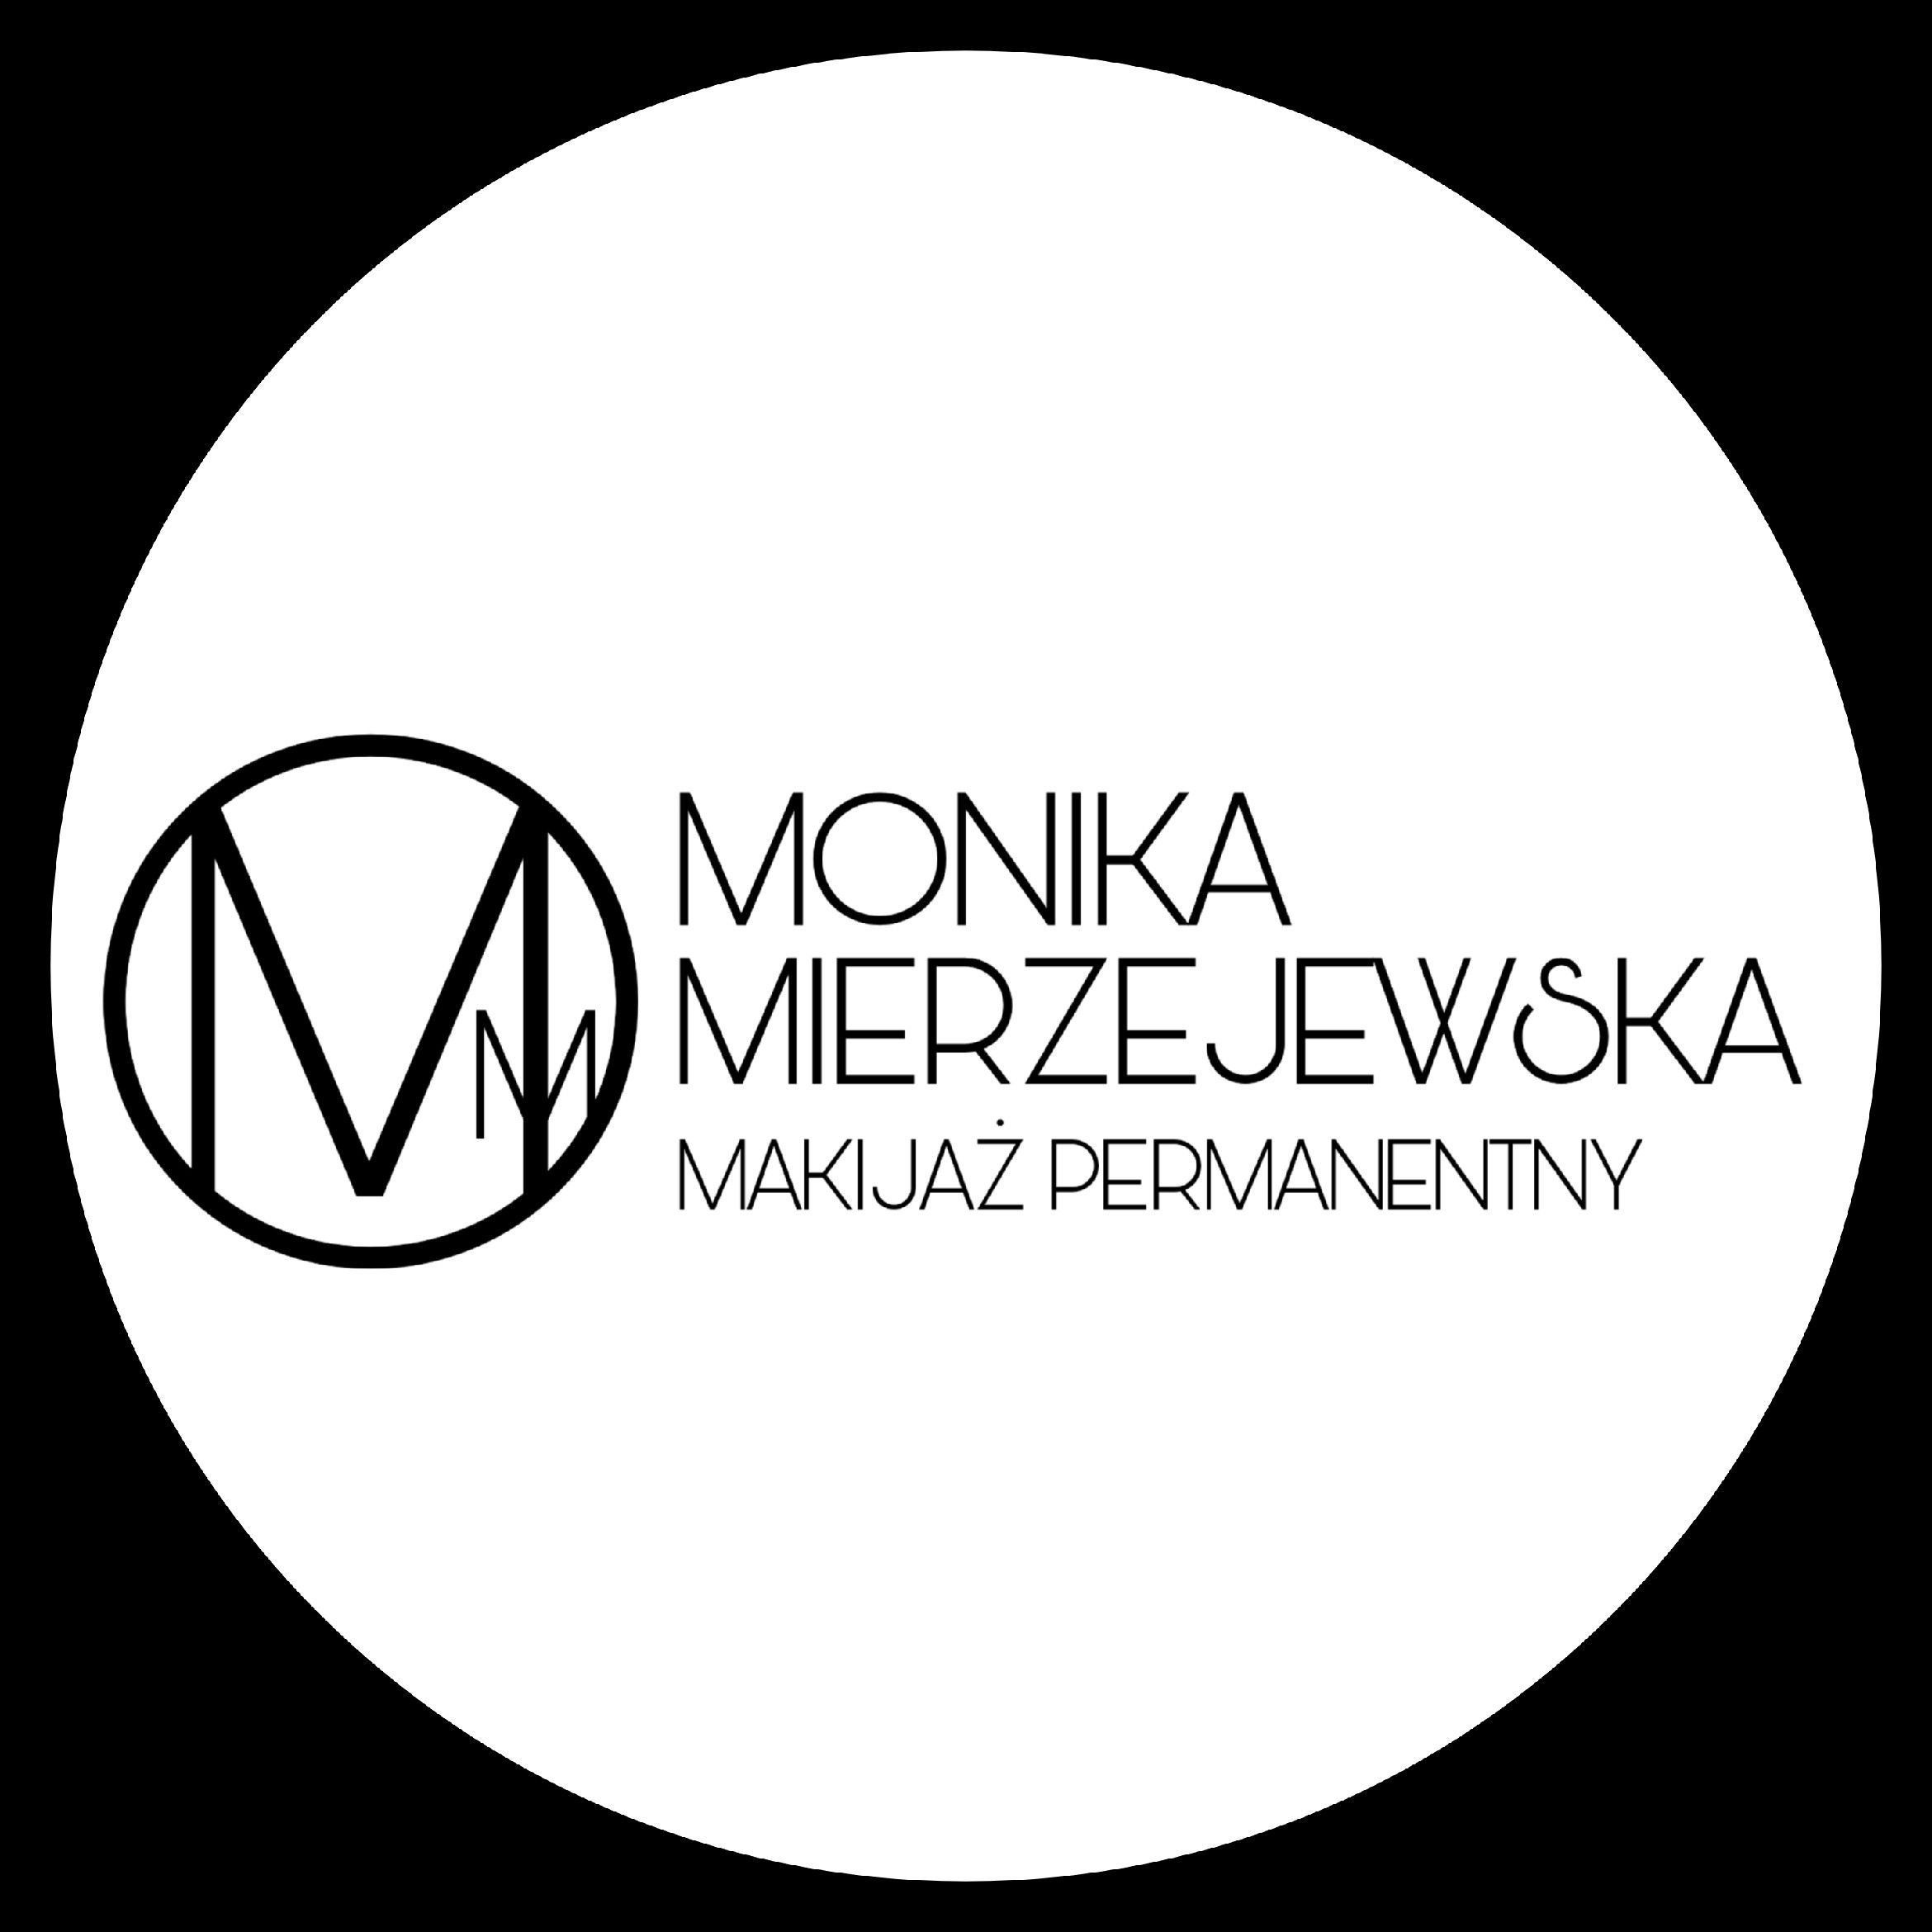 Monika Mierzejewska Makijaż Permanentny, Bajkowa 127, 28, 10-696, Olsztyn